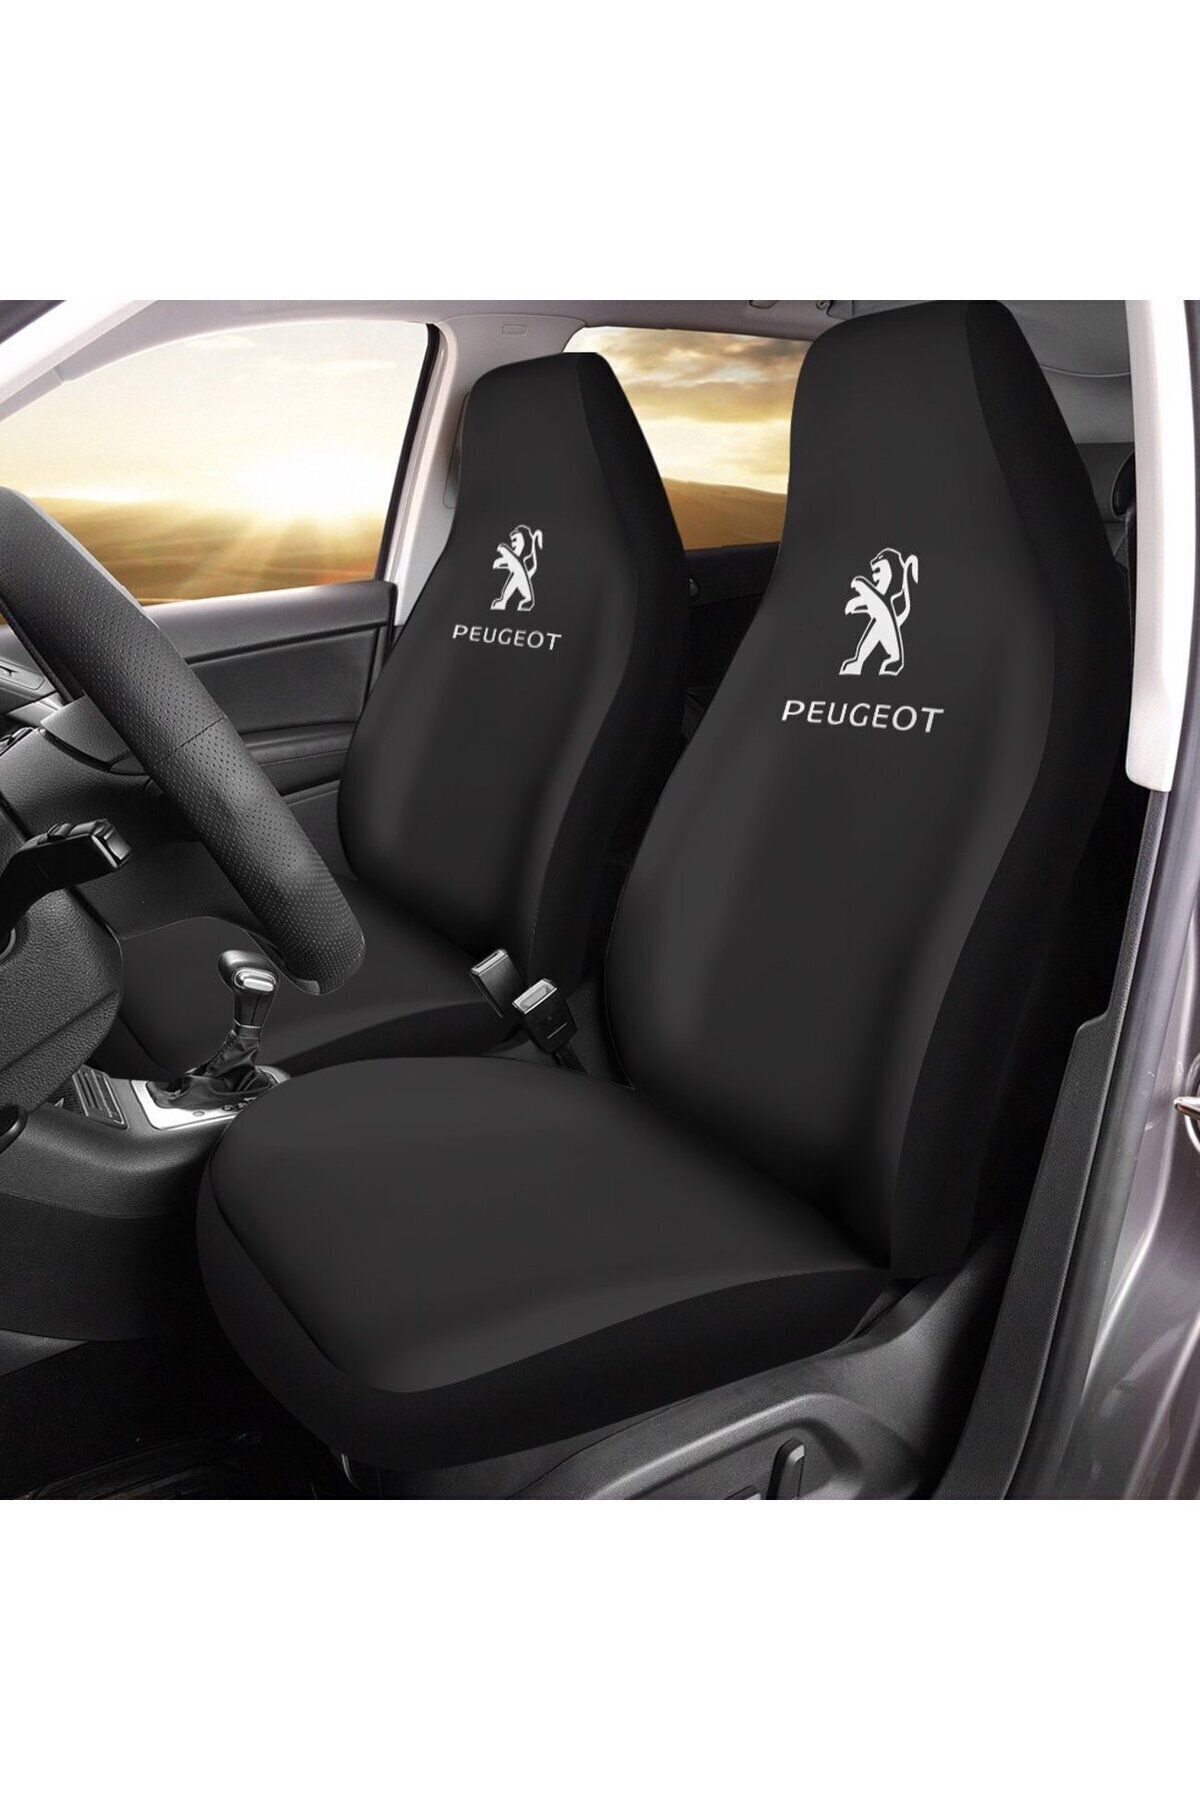 Peugeot A Kalite Peugeot Oto koltuk kılıfı Full set